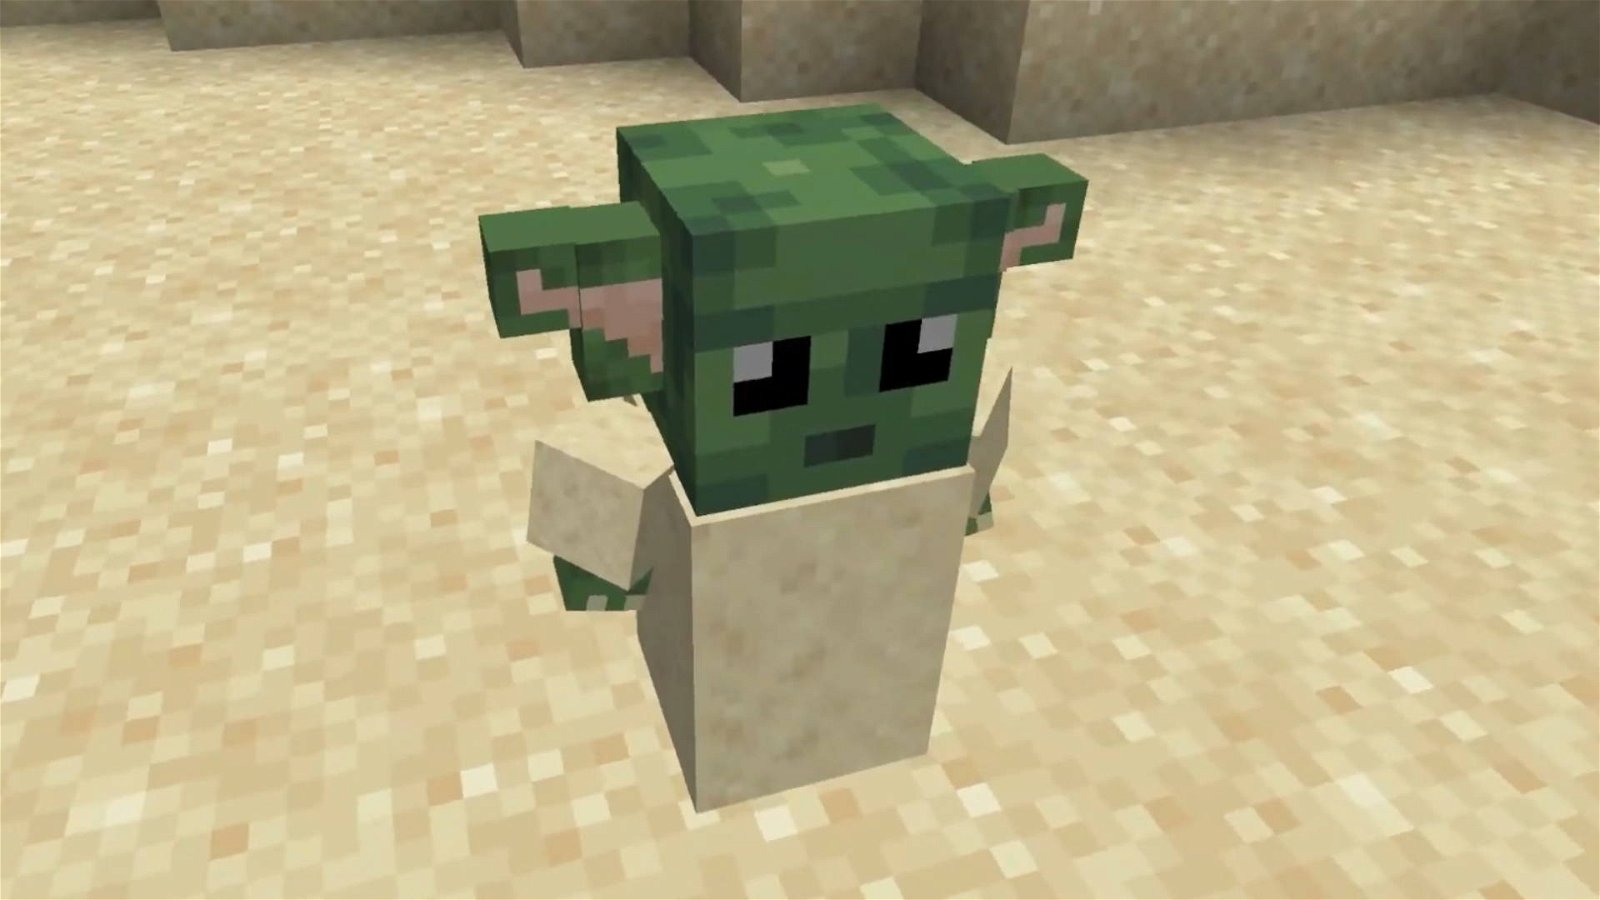 Immagine di Minecraft, la versione Bedrock è in arrivo su PlayStation 4 con il cross-play